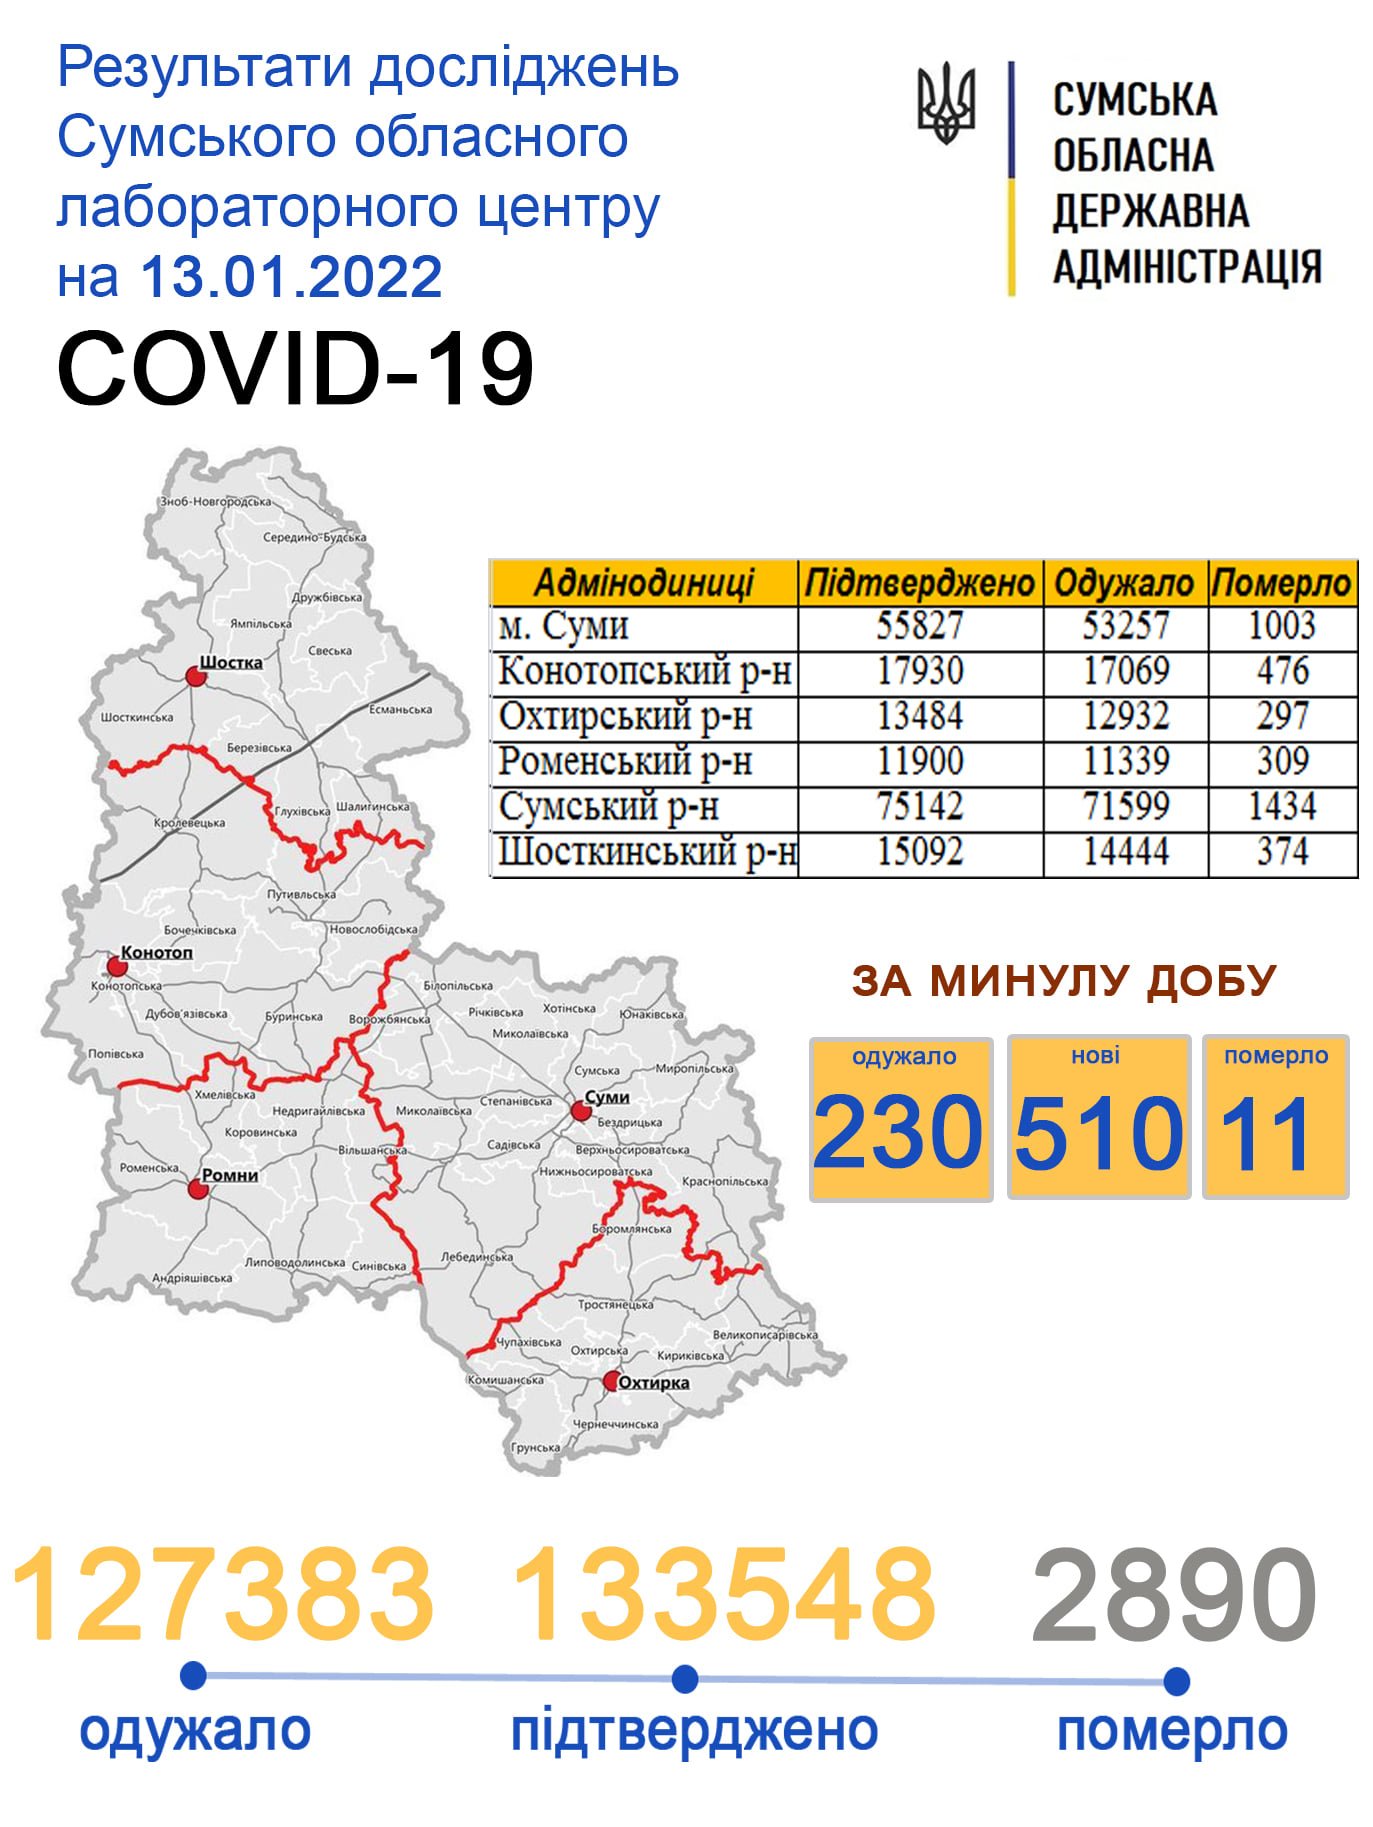     covid-19  510 